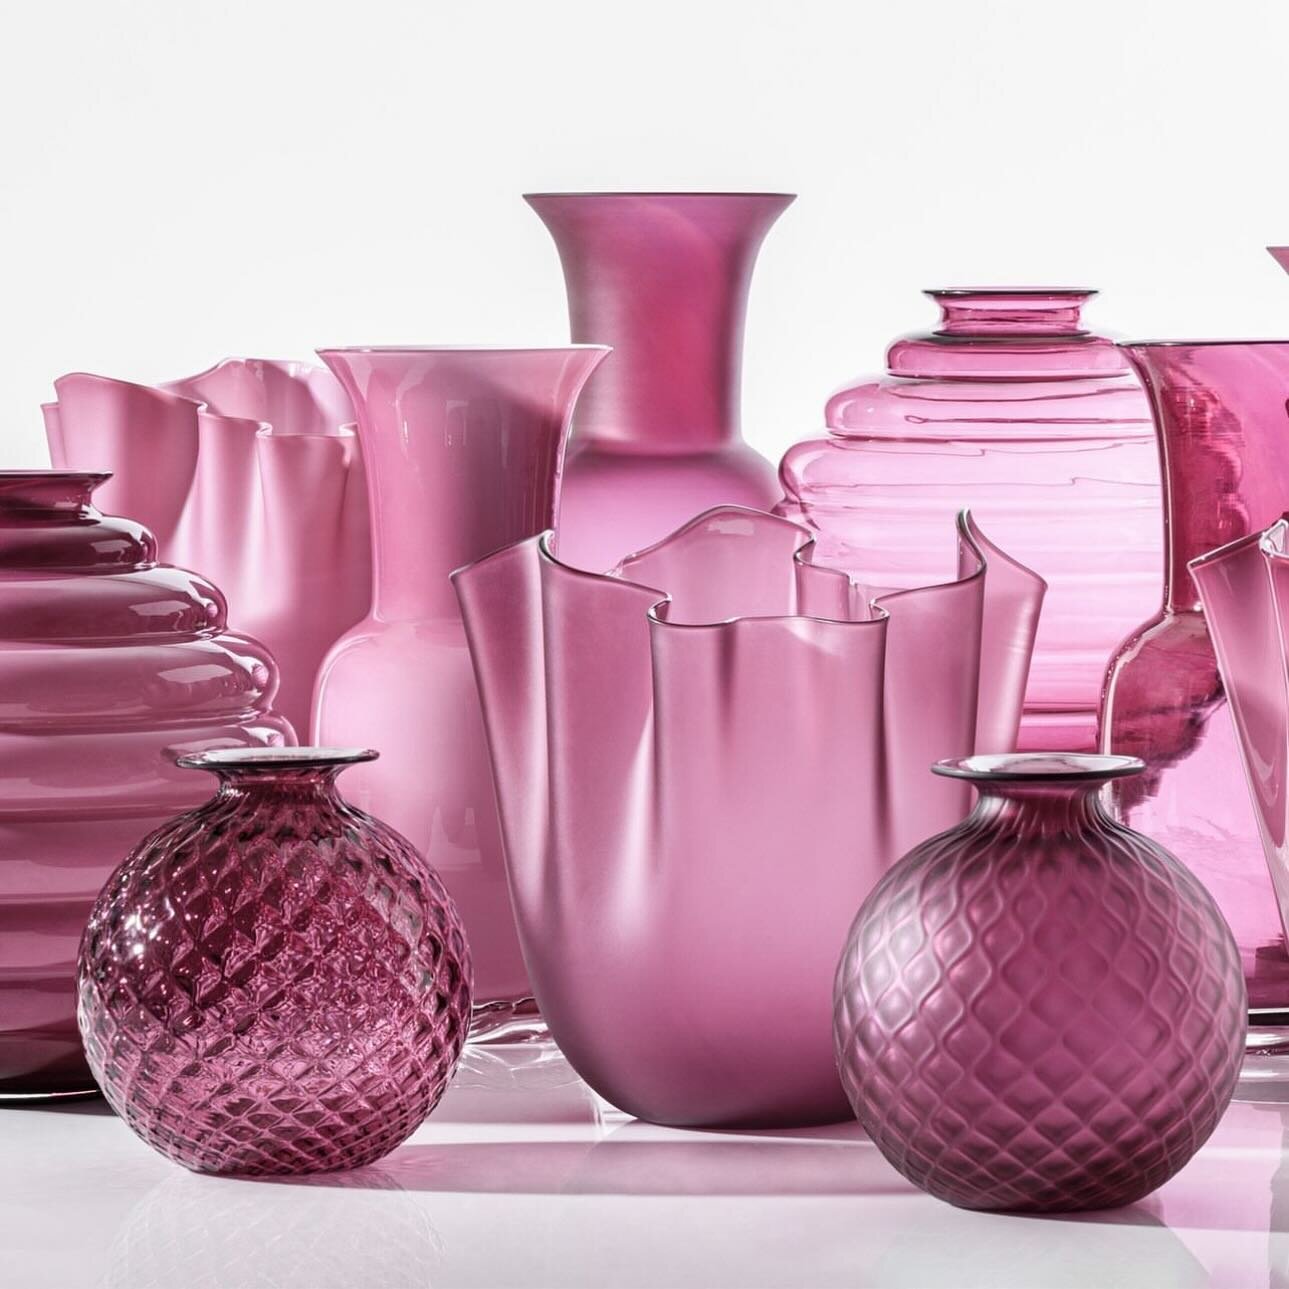 Nous sommes heureux d&rsquo;accueillir la nouvelle collection de vases de chez VENINI. 

La c&eacute;l&egrave;bre marque de Murano, aujourd&rsquo;hui centenaire, apportera le chic et le raffinement &agrave; votre int&eacute;rieur. Quelque soit la cou